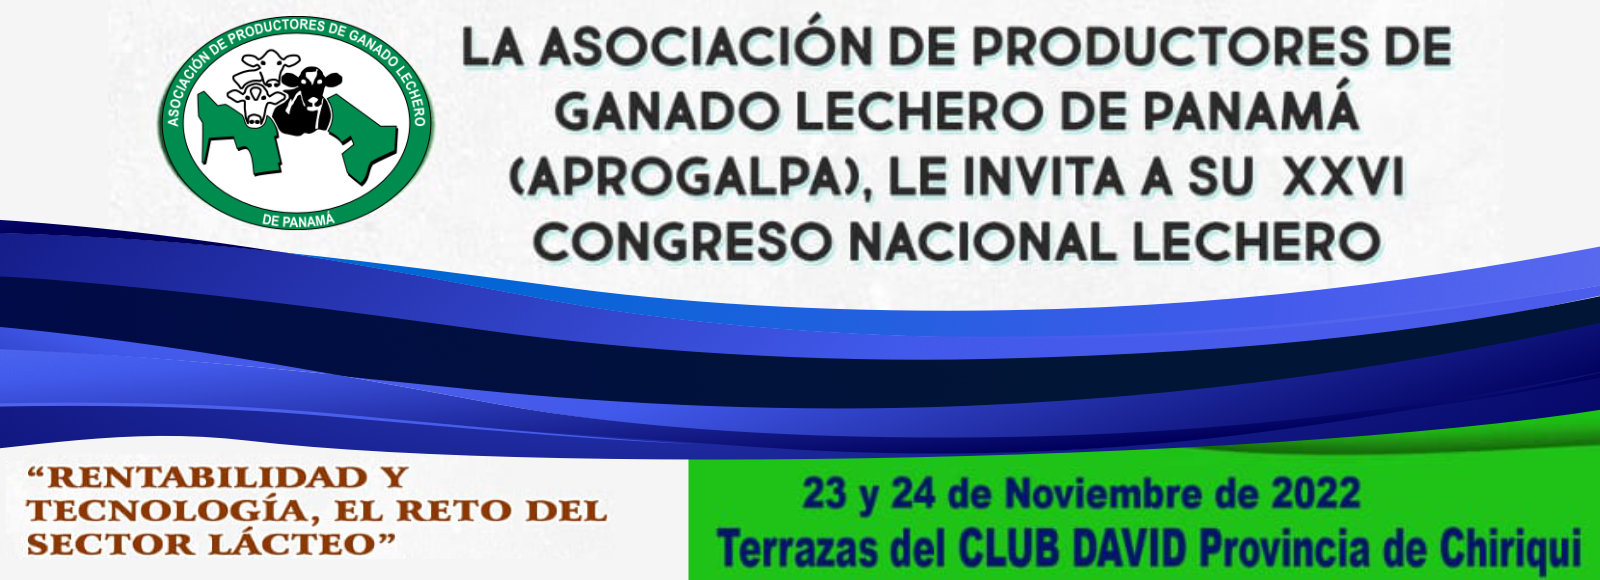 Eventos - XXVI Congreso Nacional Lechero 2022